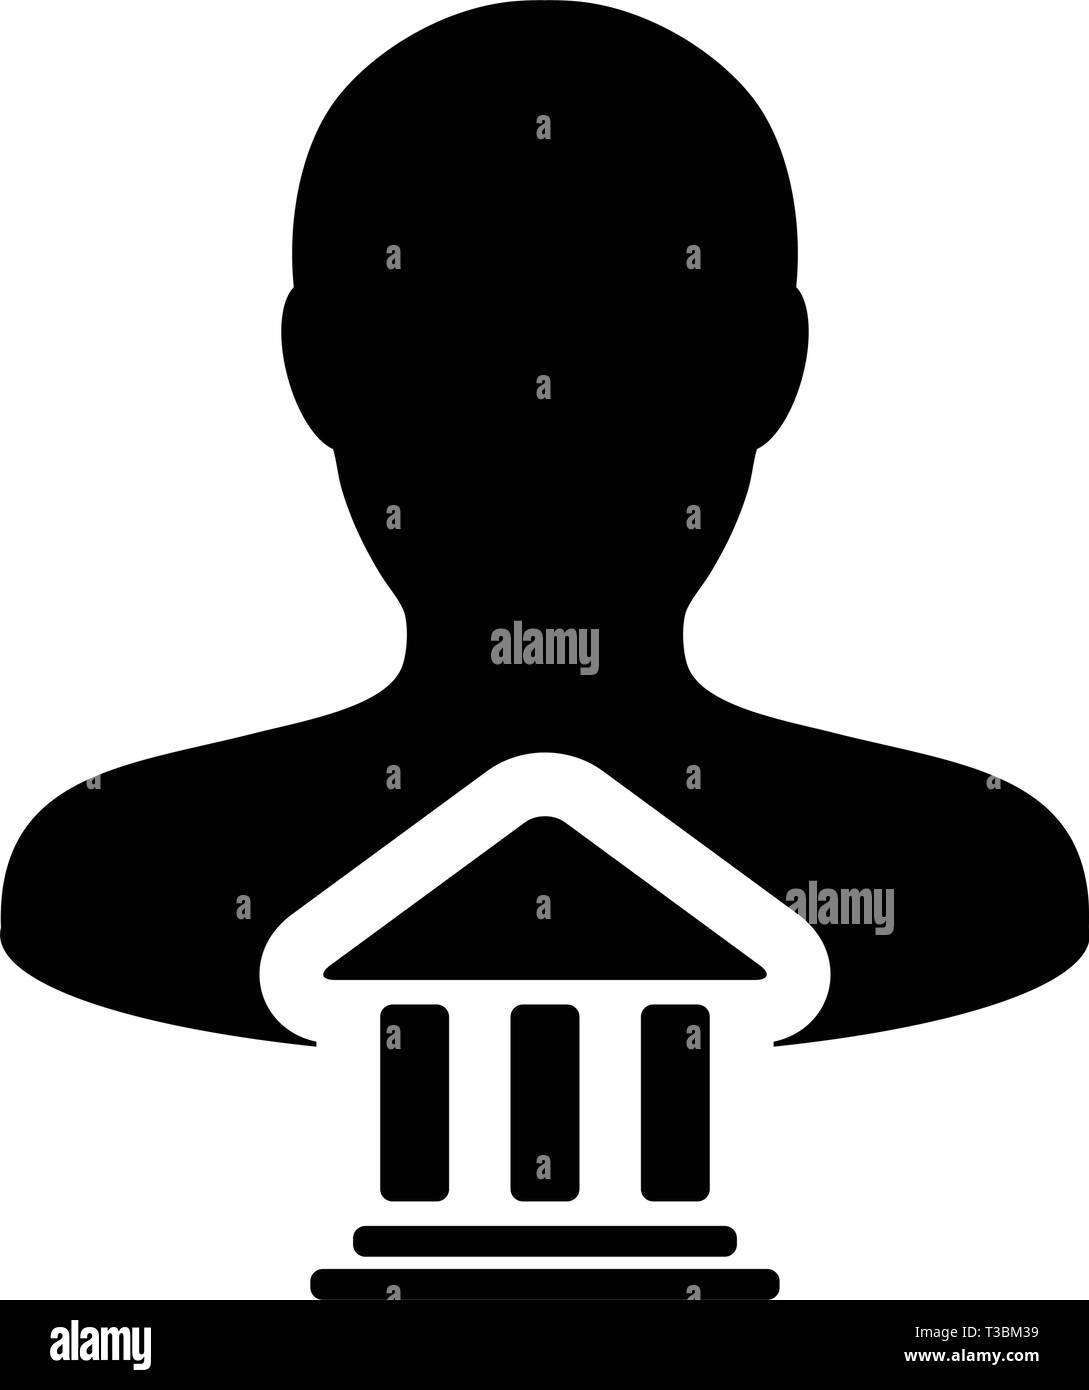 Zahlungen Symbol Vektor mit männliche Person Profil Avatar mit Gebäude Symbol für Banking und Finance in Glyph Piktogramm Abbildung Stock Vektor